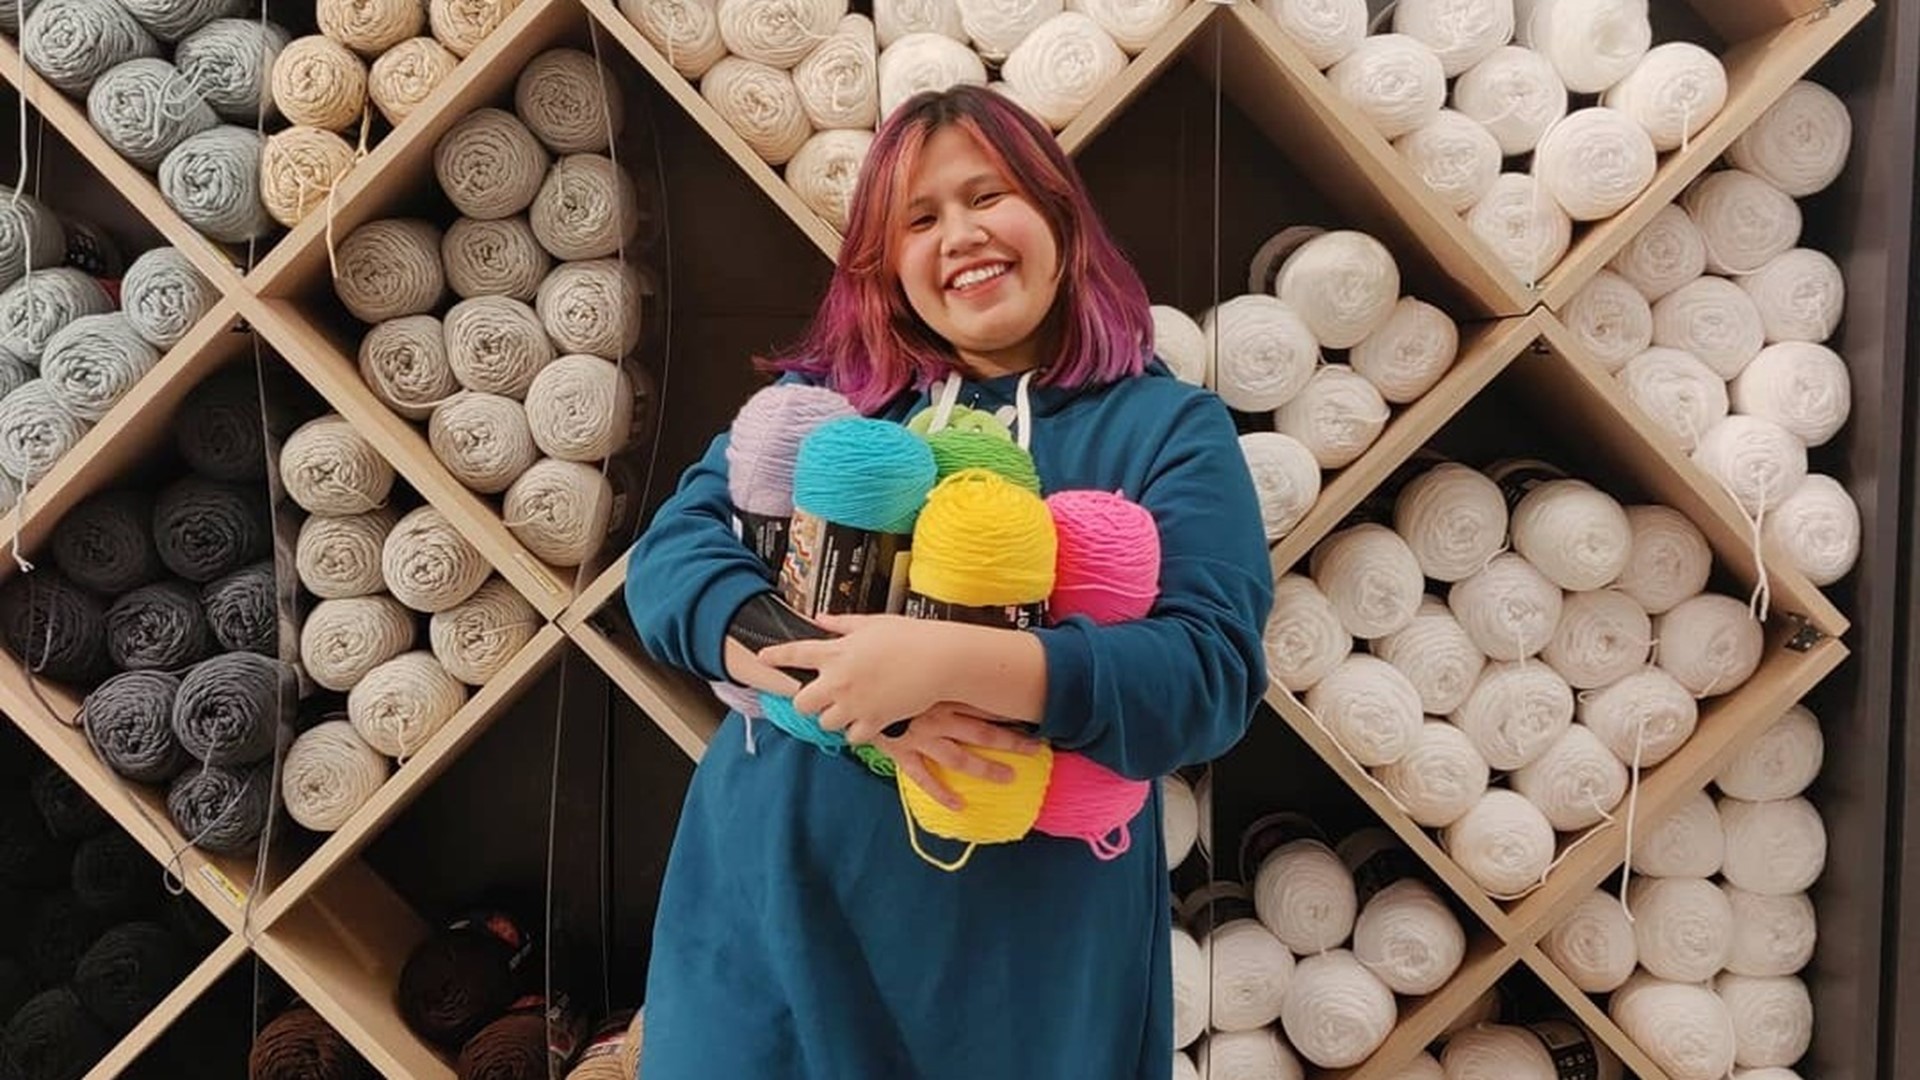 Based in Stockton, Prescilla Ann Fahardo found her joy in the art of Japanese style crochet.